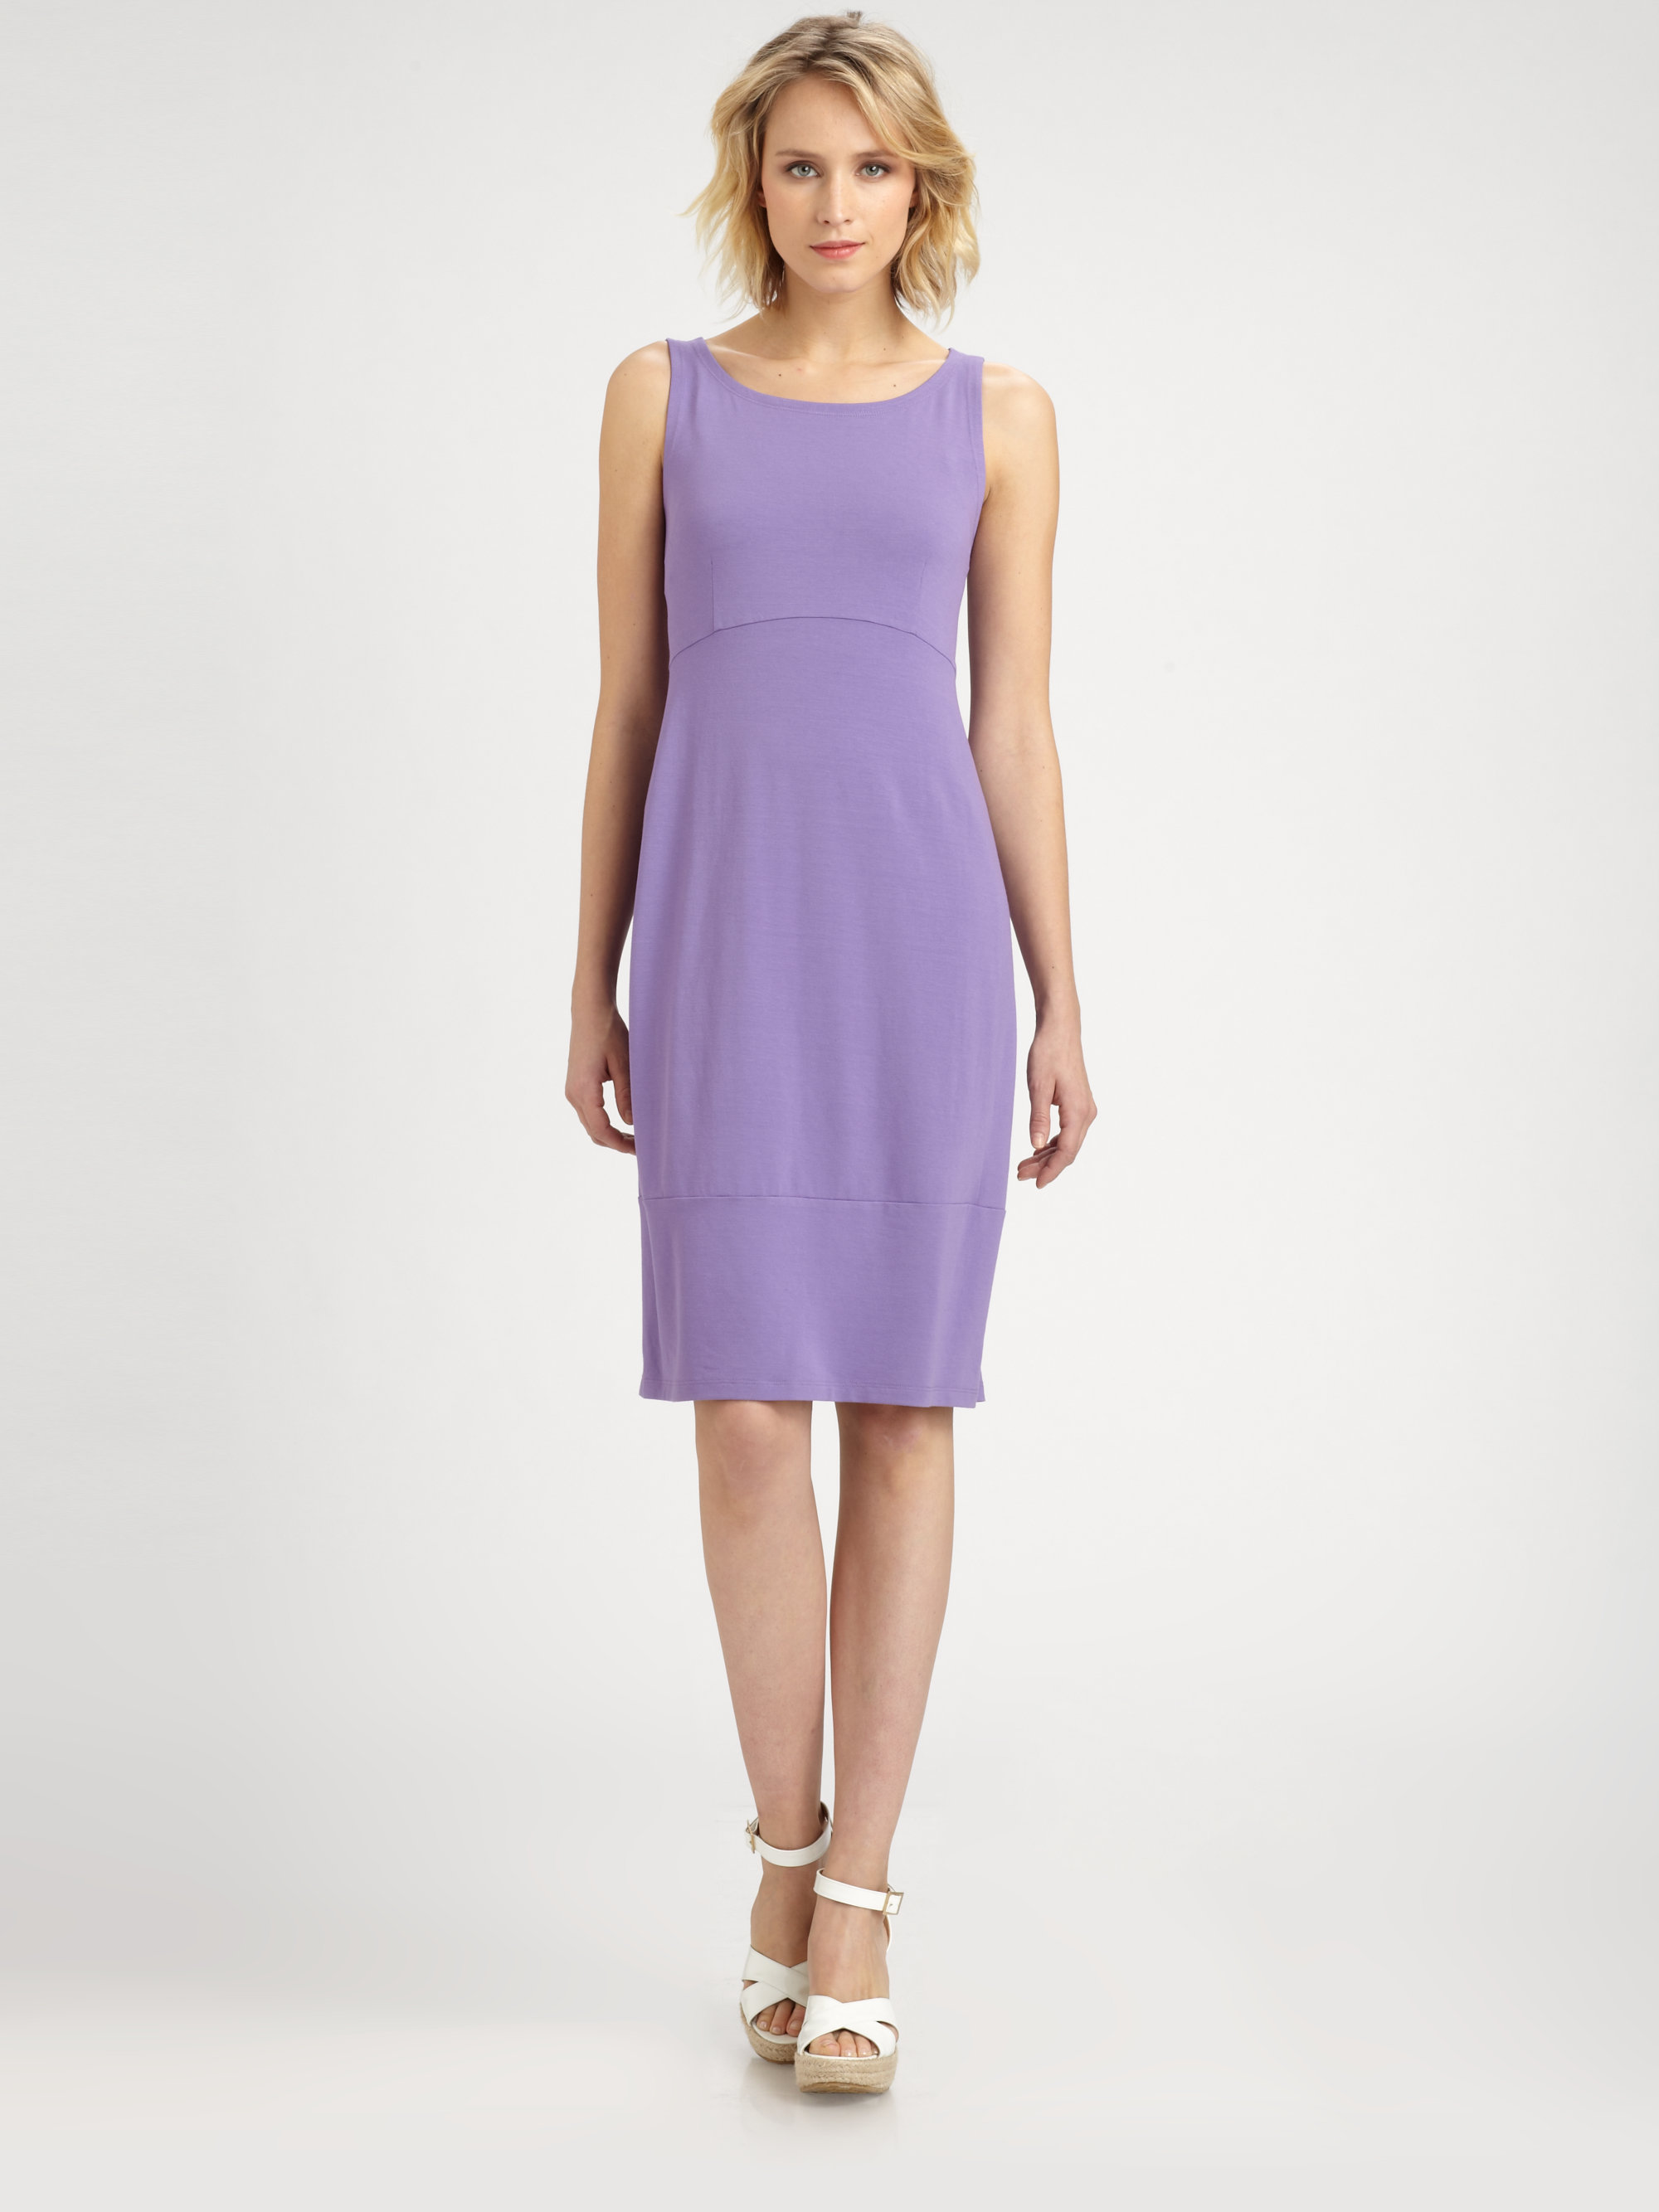 Lyst - Eileen Fisher Sleeveless Oval Dress in Purple